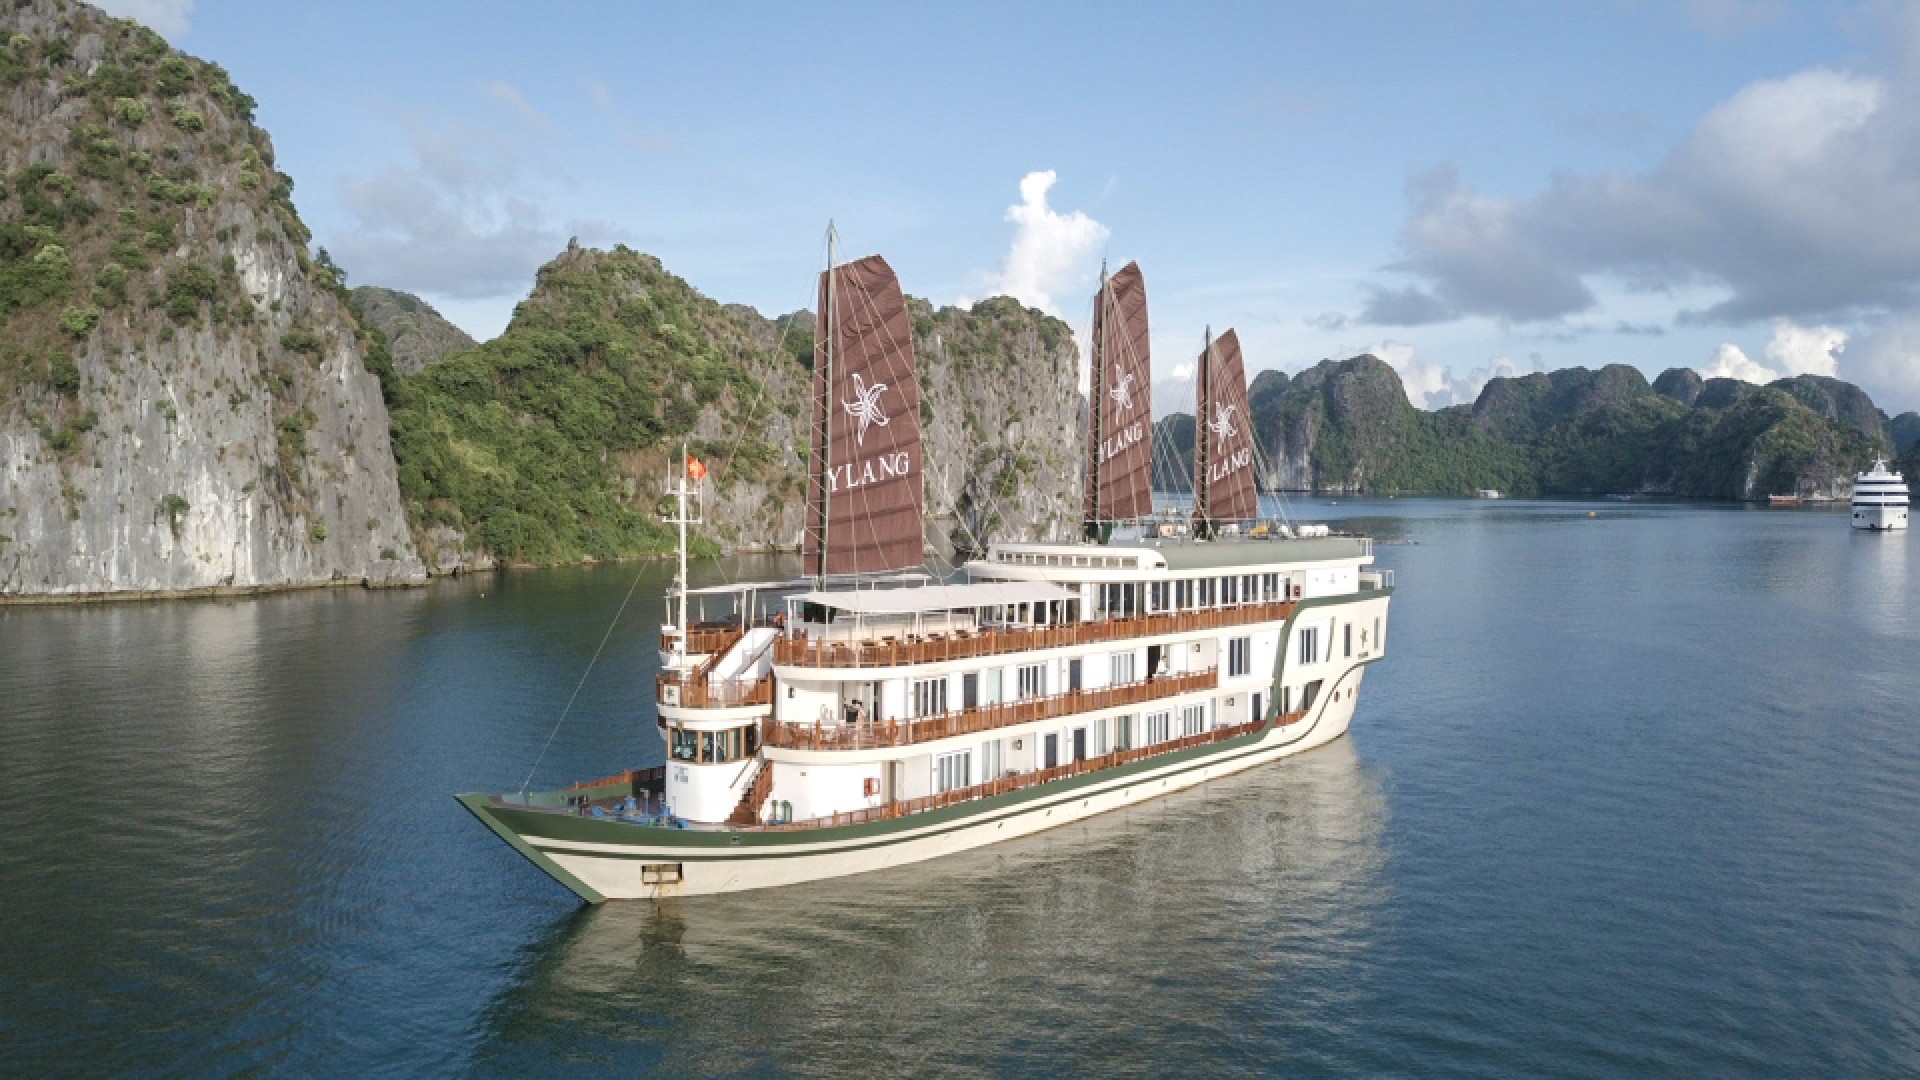 Ylang Cruise Boat